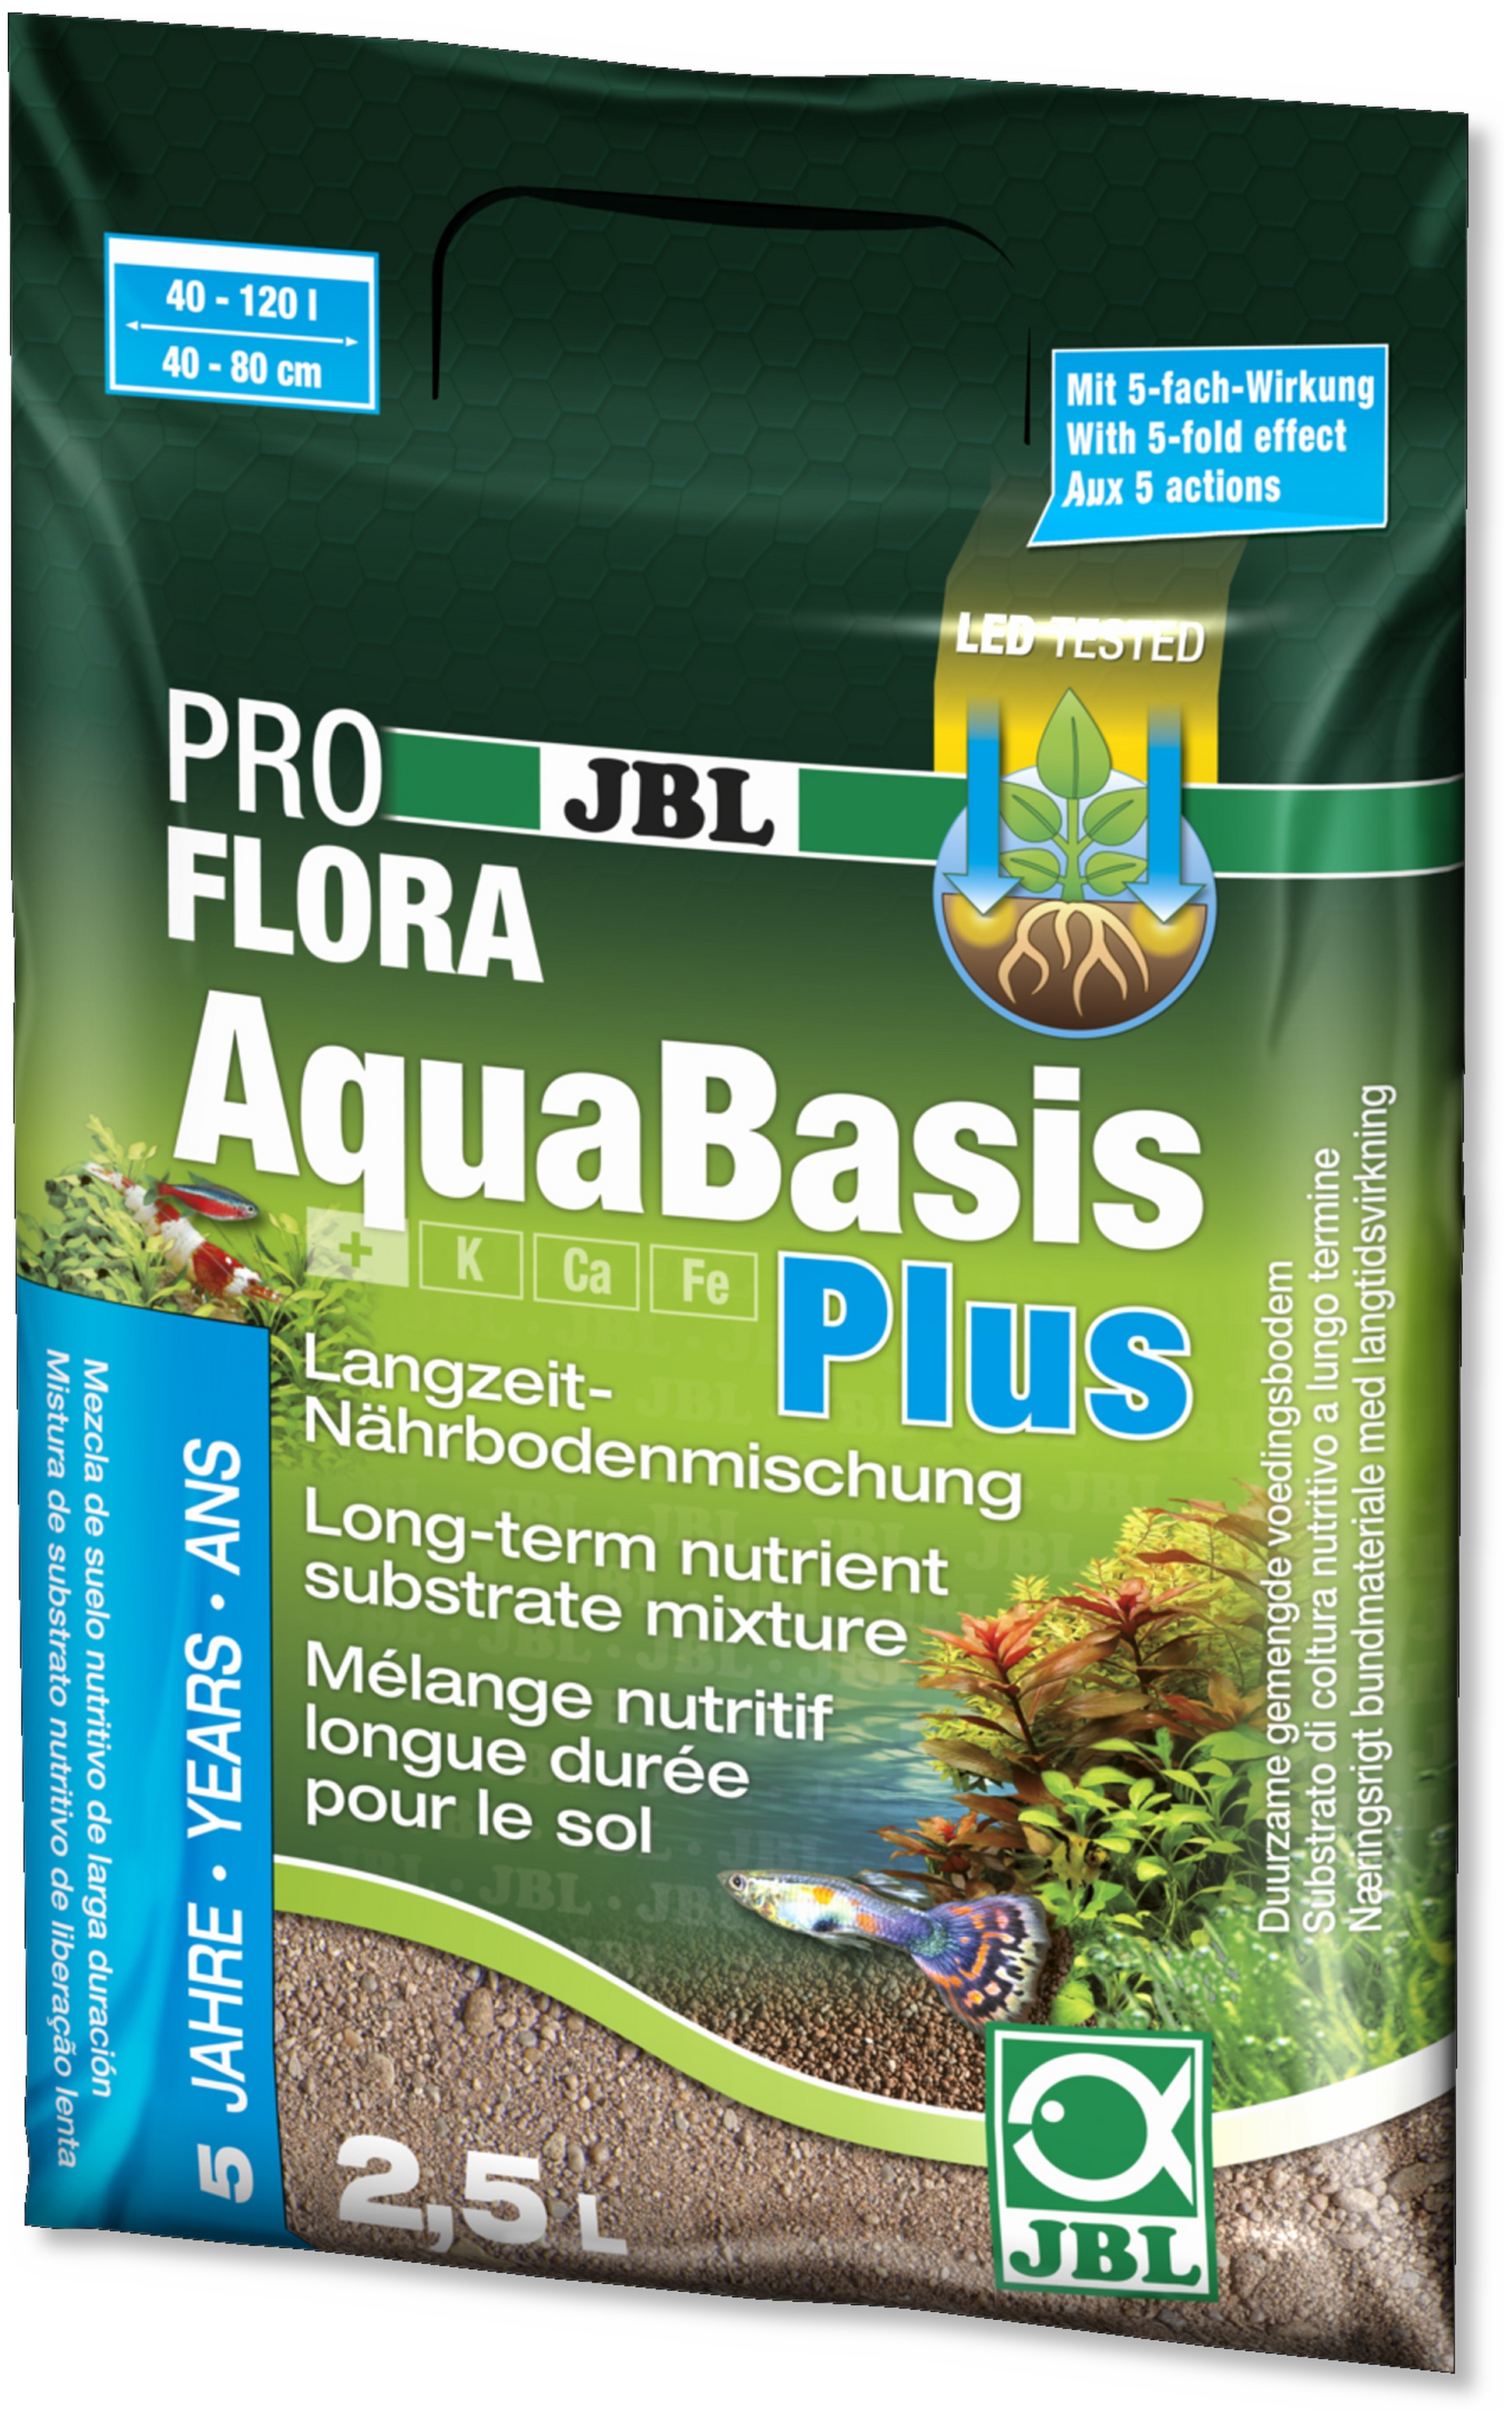 JBL PROFLORA AquaBasis plus